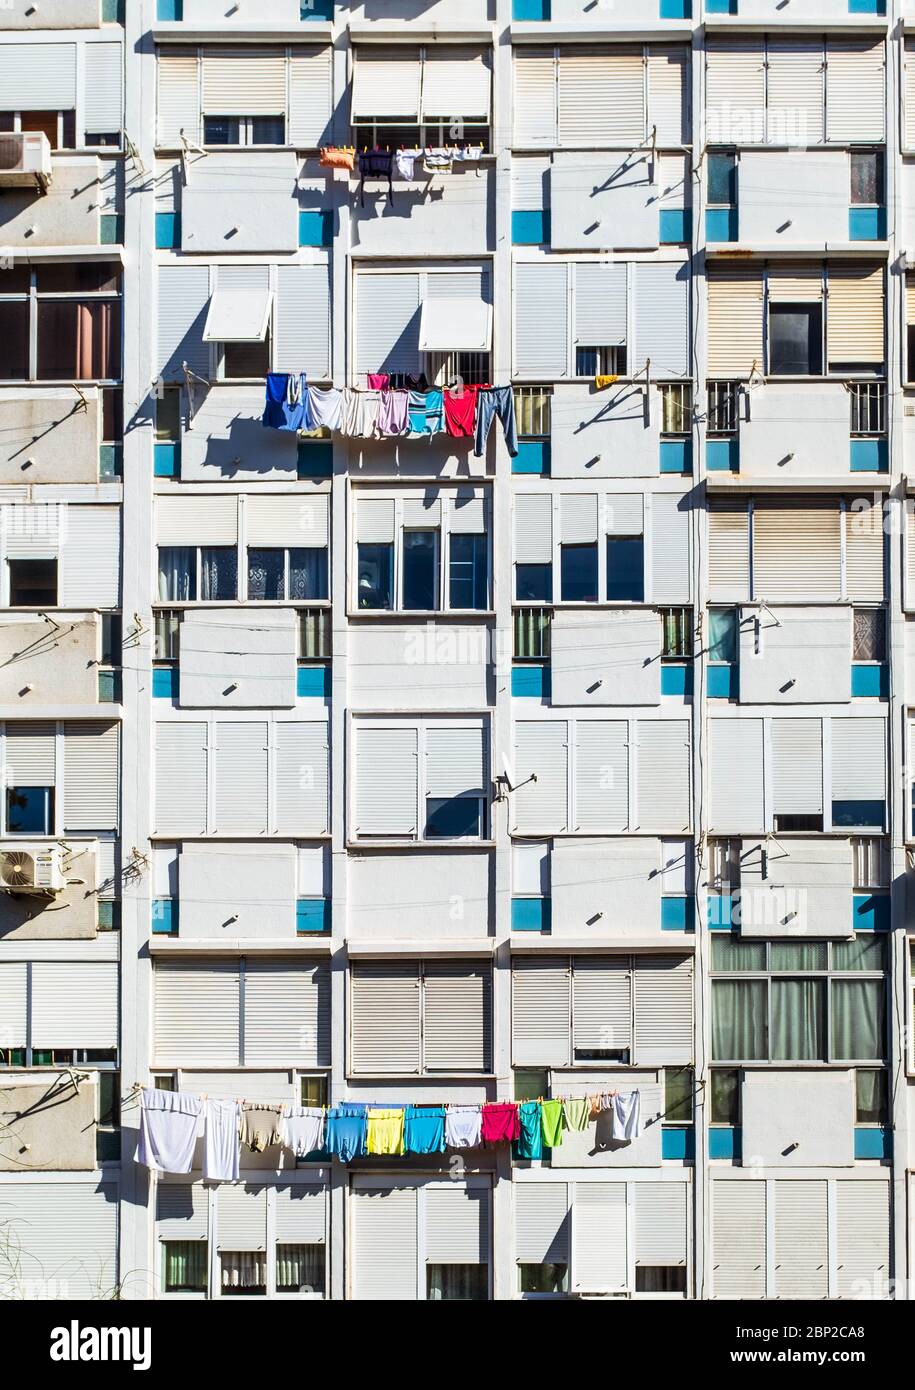 Fenster des mehrstöckigen Wohnhauses mit bunten Kleidung Trocknen auf Trockengestellen. Stockfoto